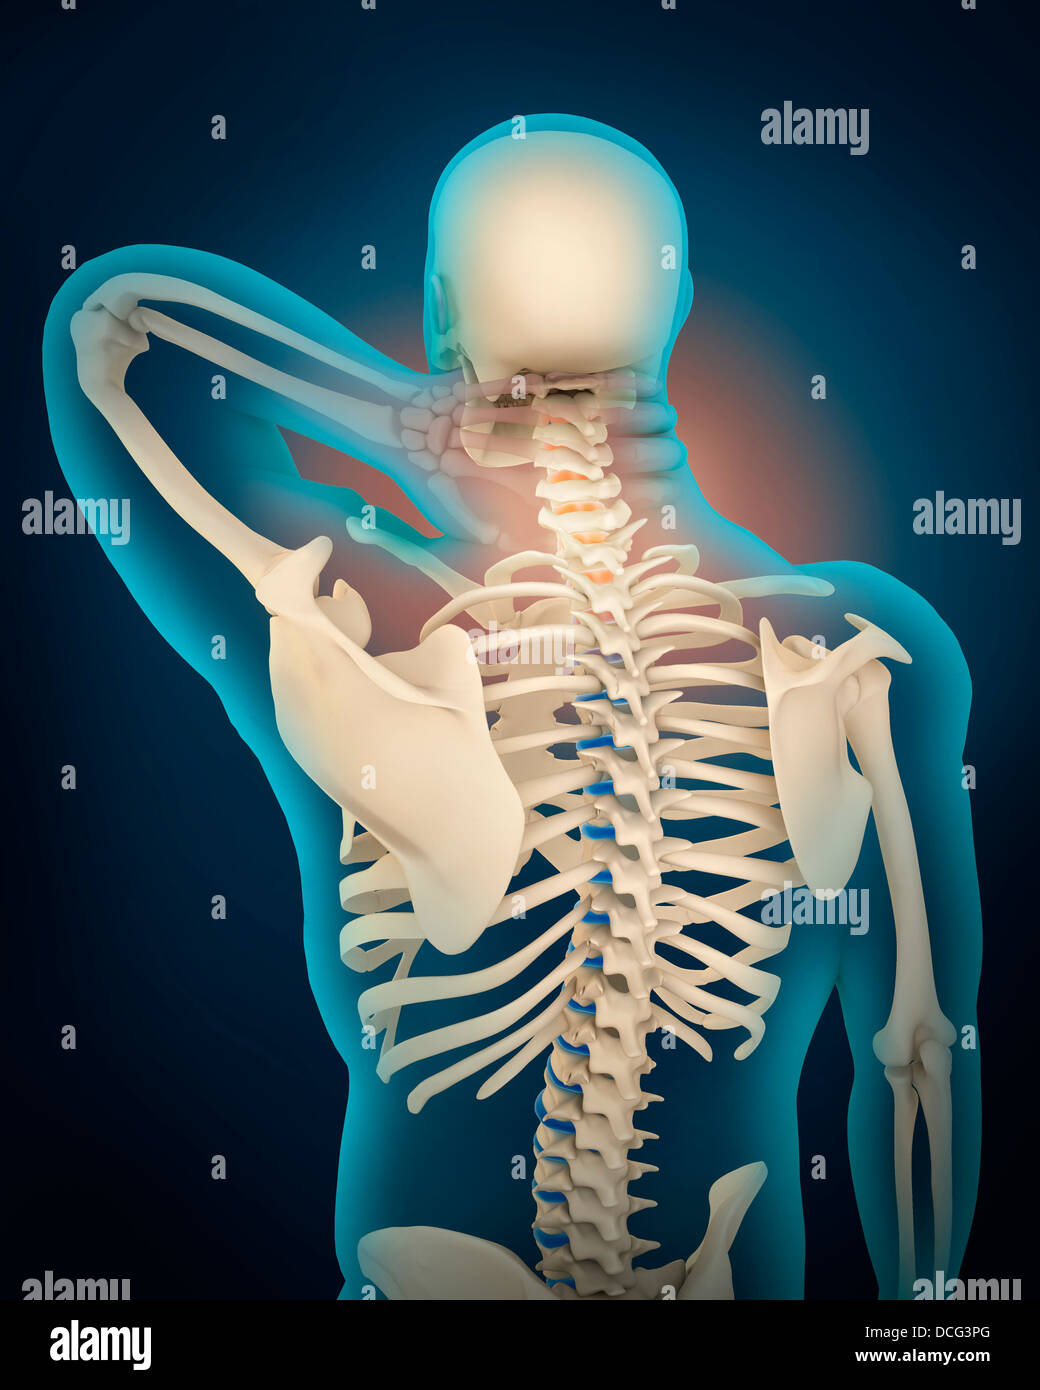 Illustrazione medica mostra infiammazione e dolore umano nella zona del collo, vista prospettica. Foto Stock